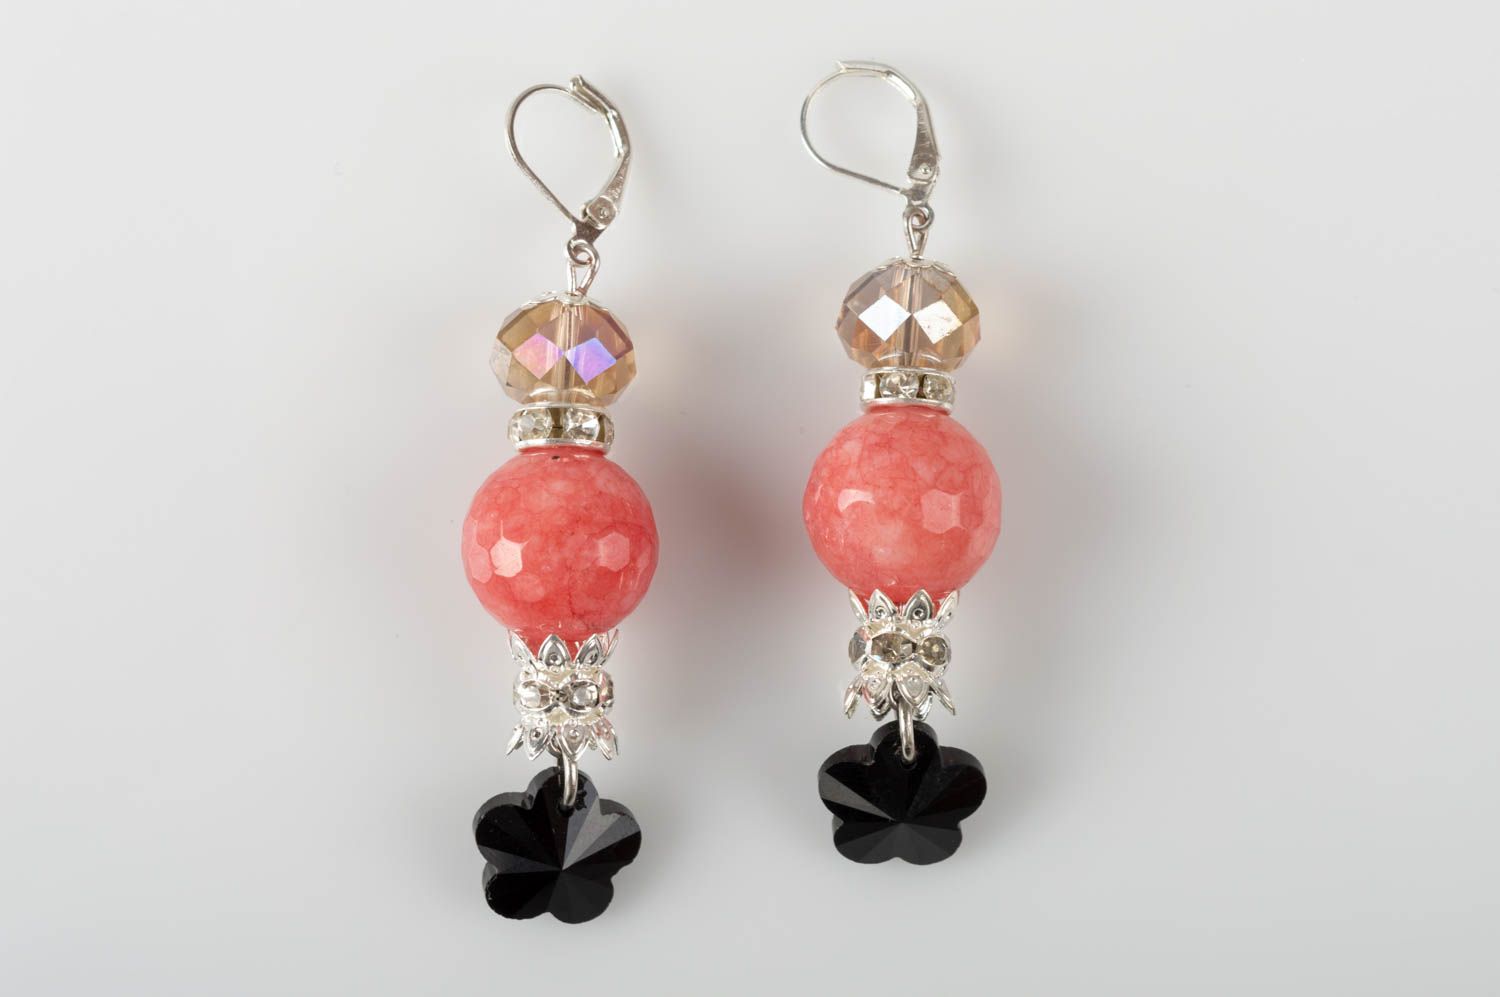 Unusual handmade gemstone earrings designer crystal earrings gifts for her photo 2